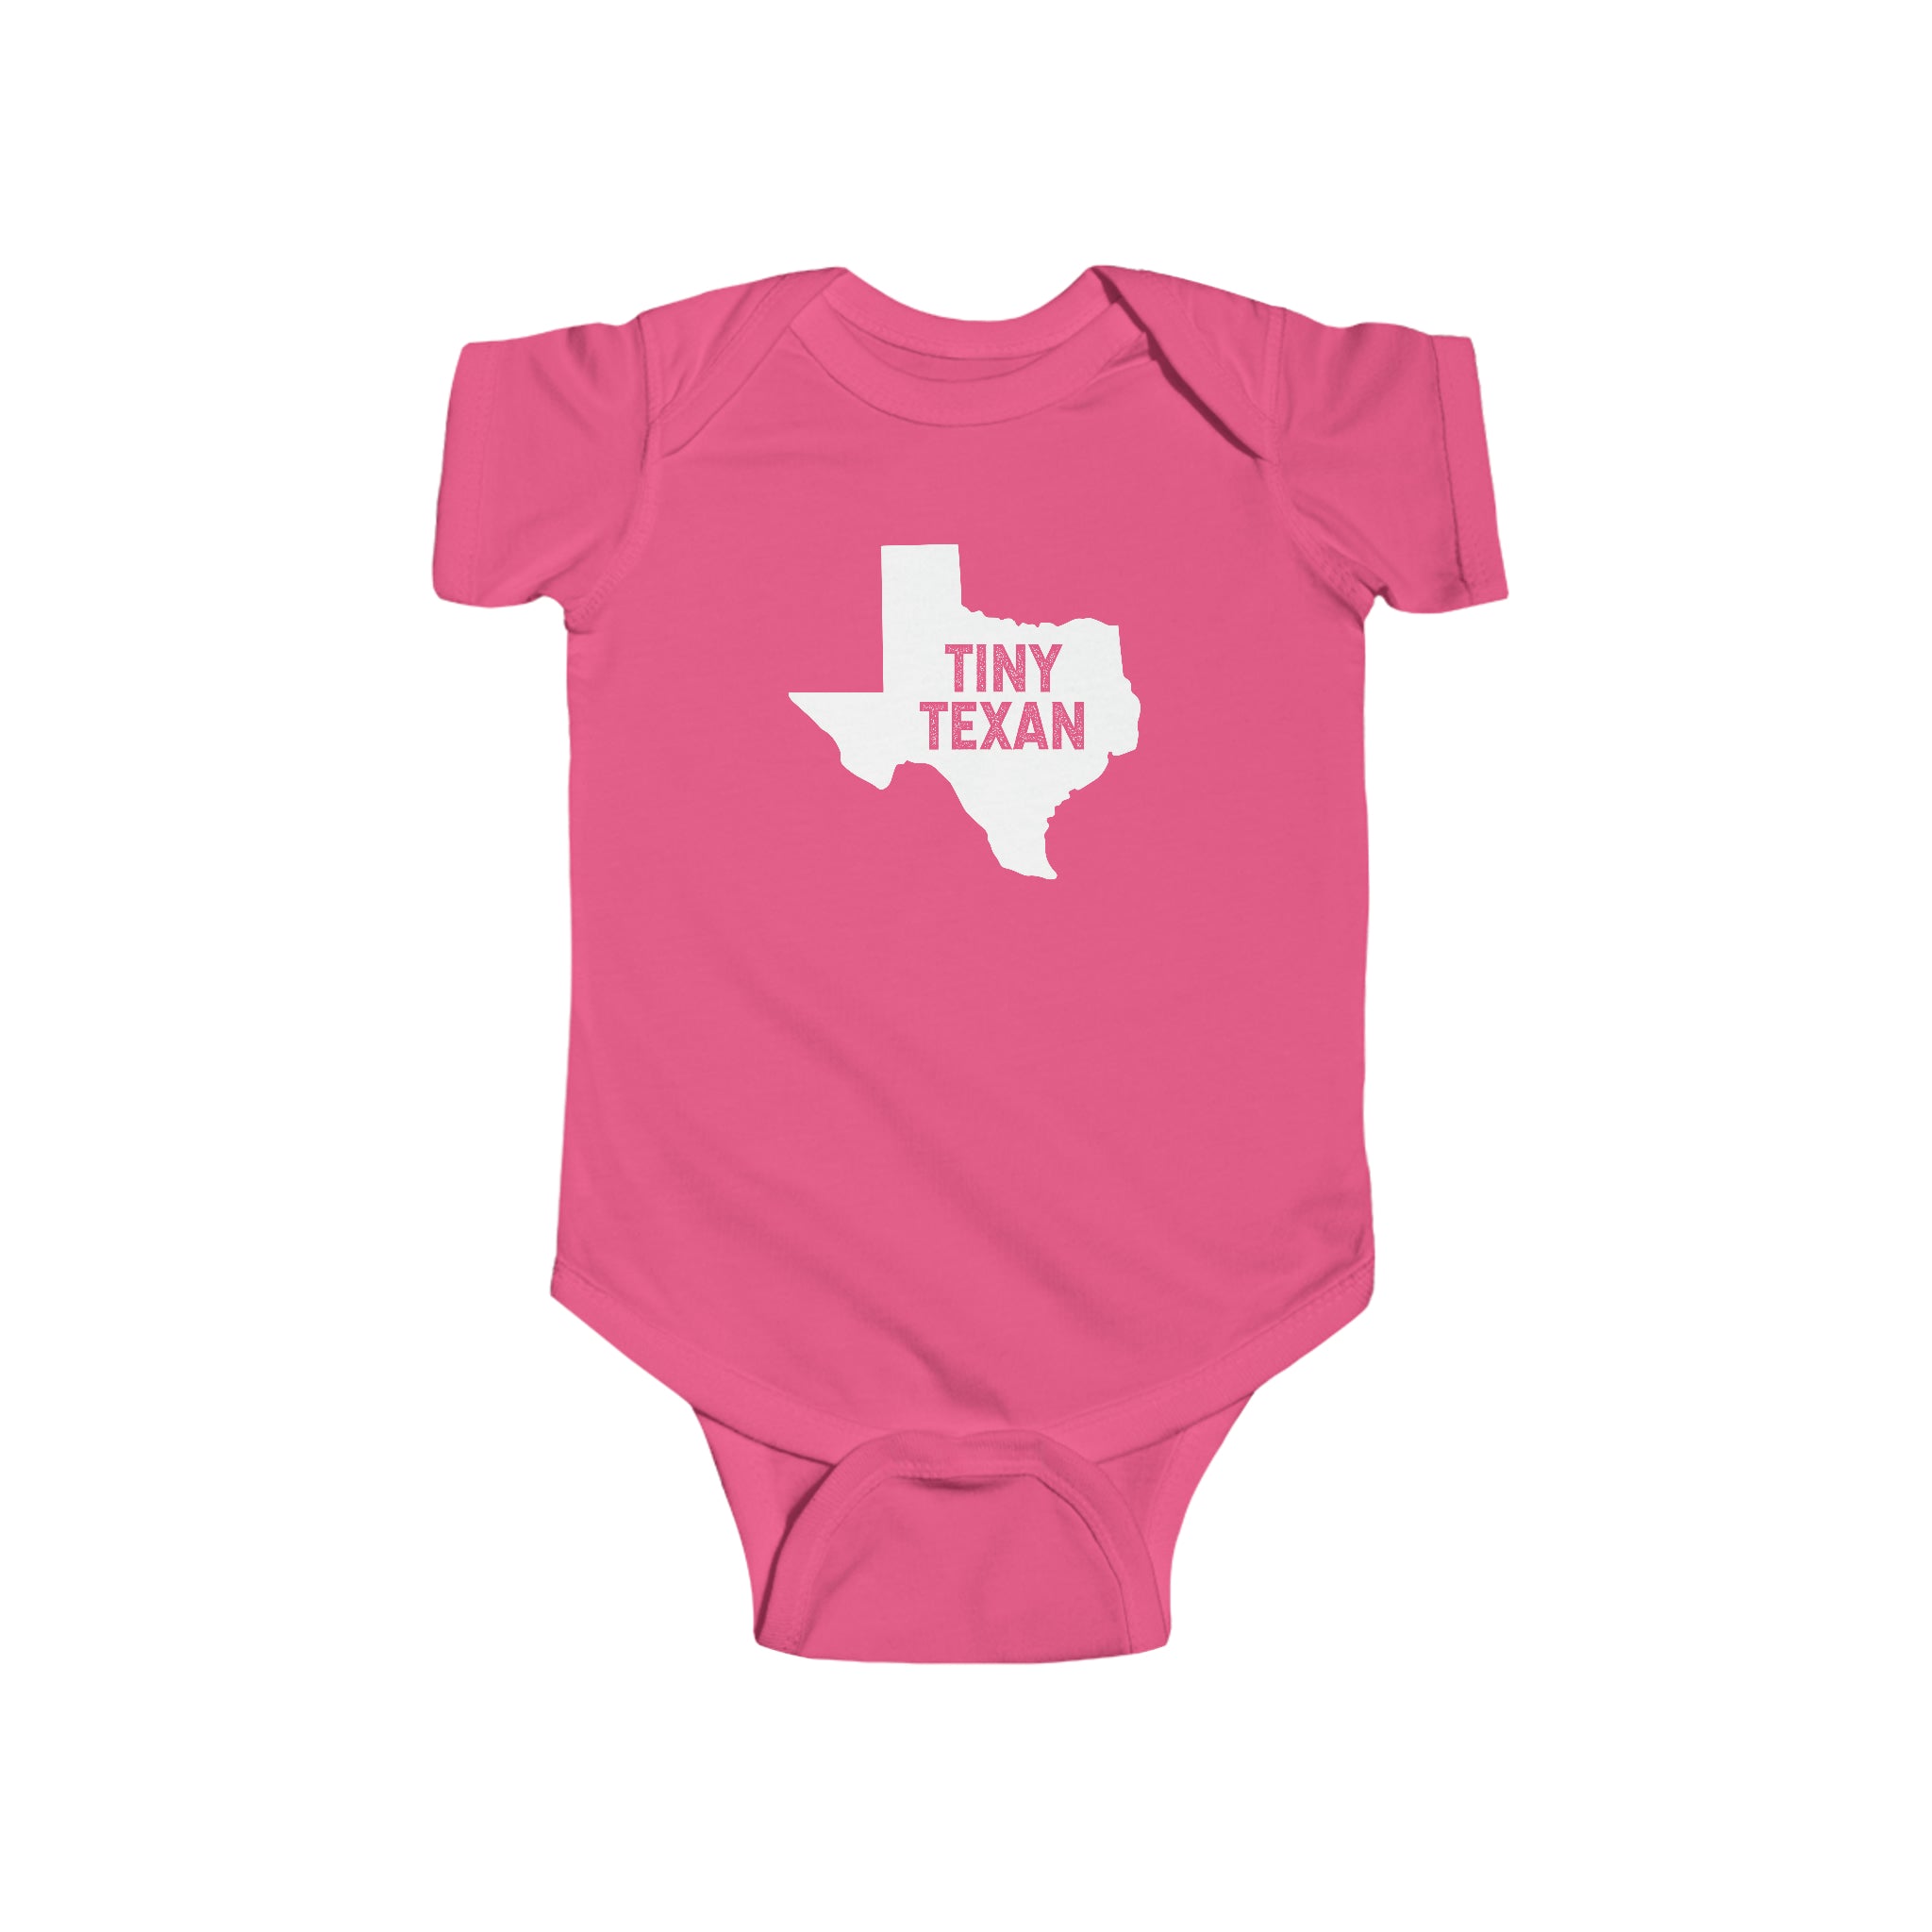 Tiny Texan Onesie